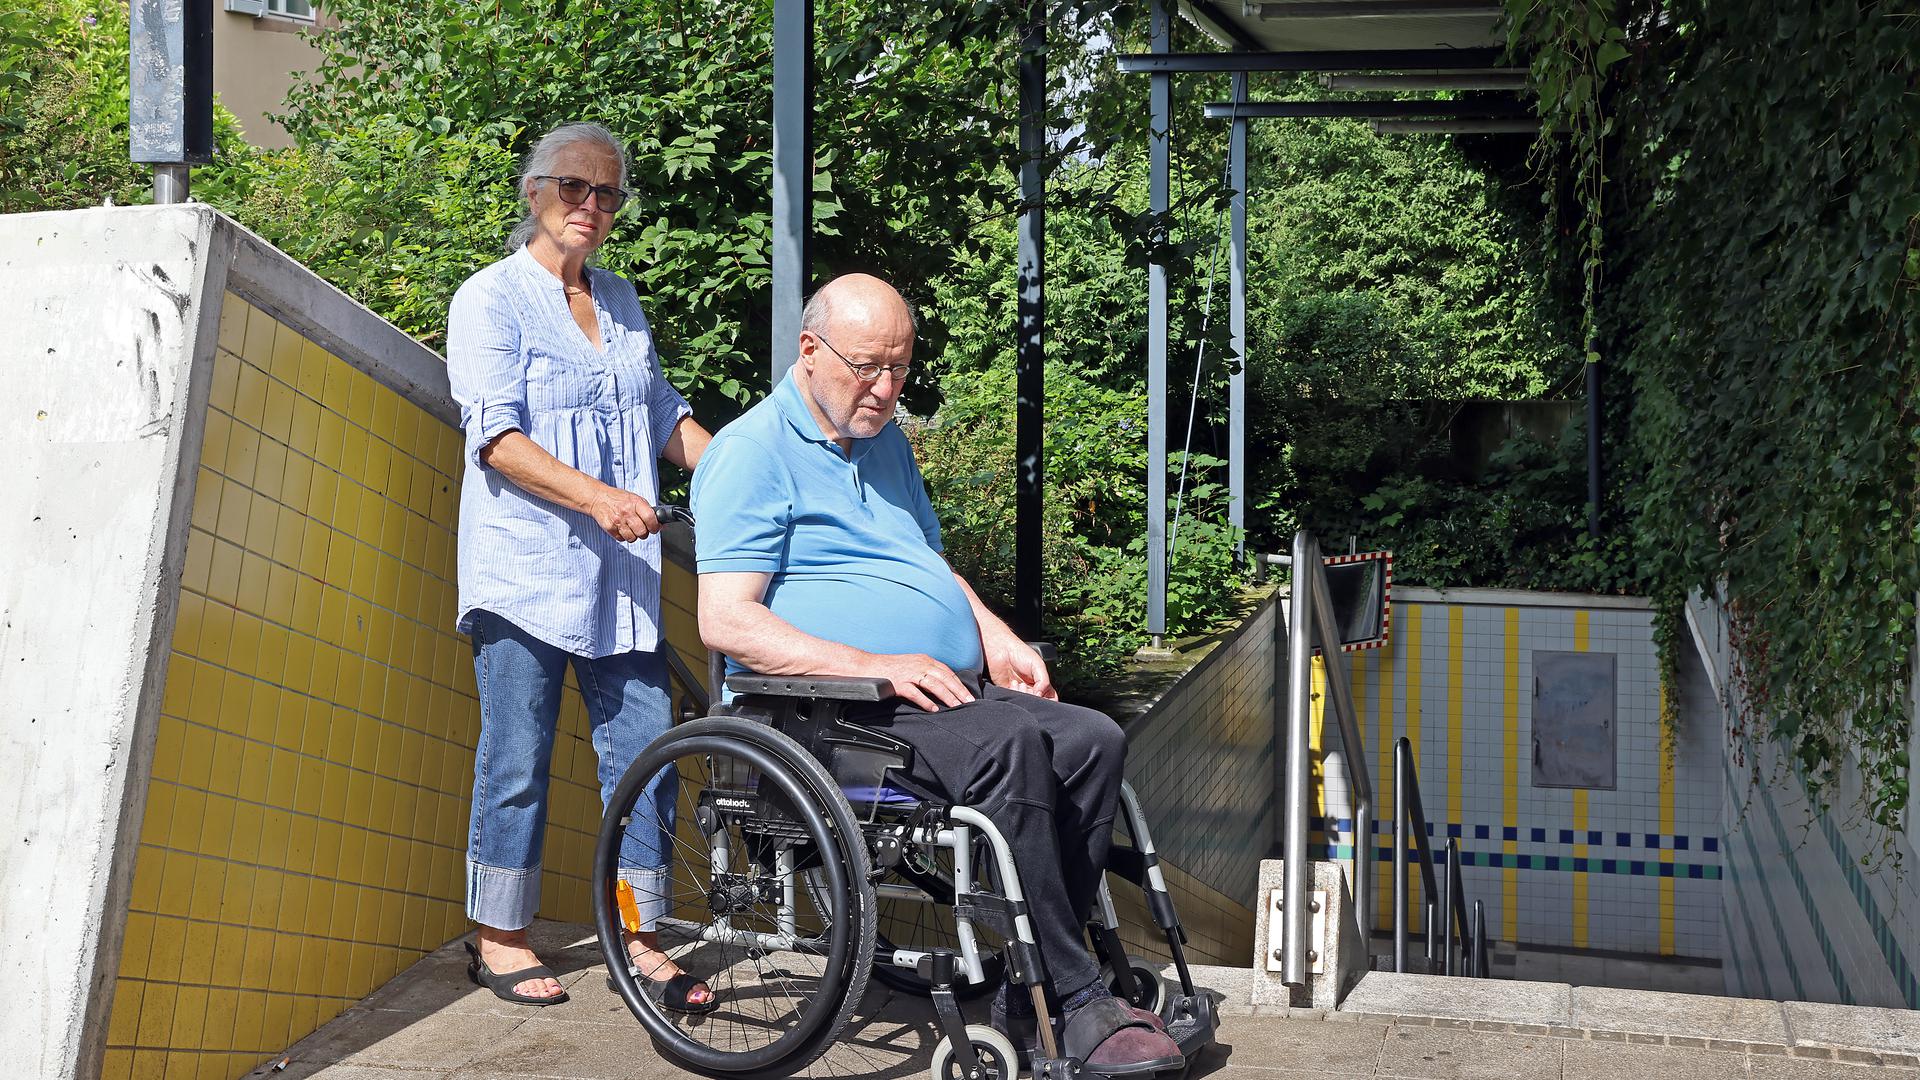 Am 26.06.2022 zeigen am Bahnhof Durlach Gudrun und Horst Gaiser aus der Untermühlsiedlung die Situation für Rollstuhlfahrer an der Unteren Mühle.